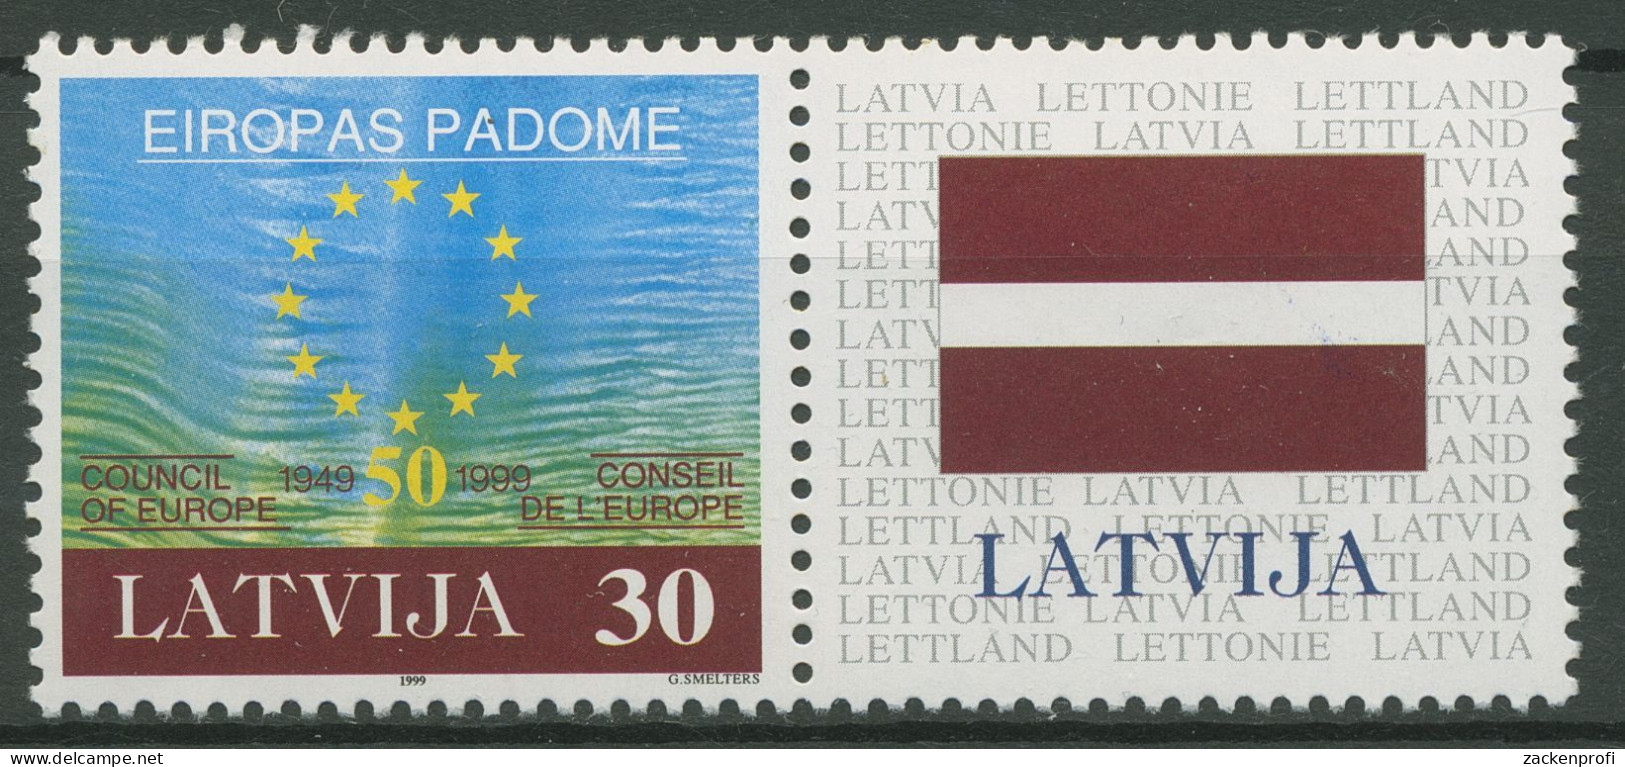 Lettland 1999 50 Jahre Europarat 500 Zf Postfrisch - Lettland